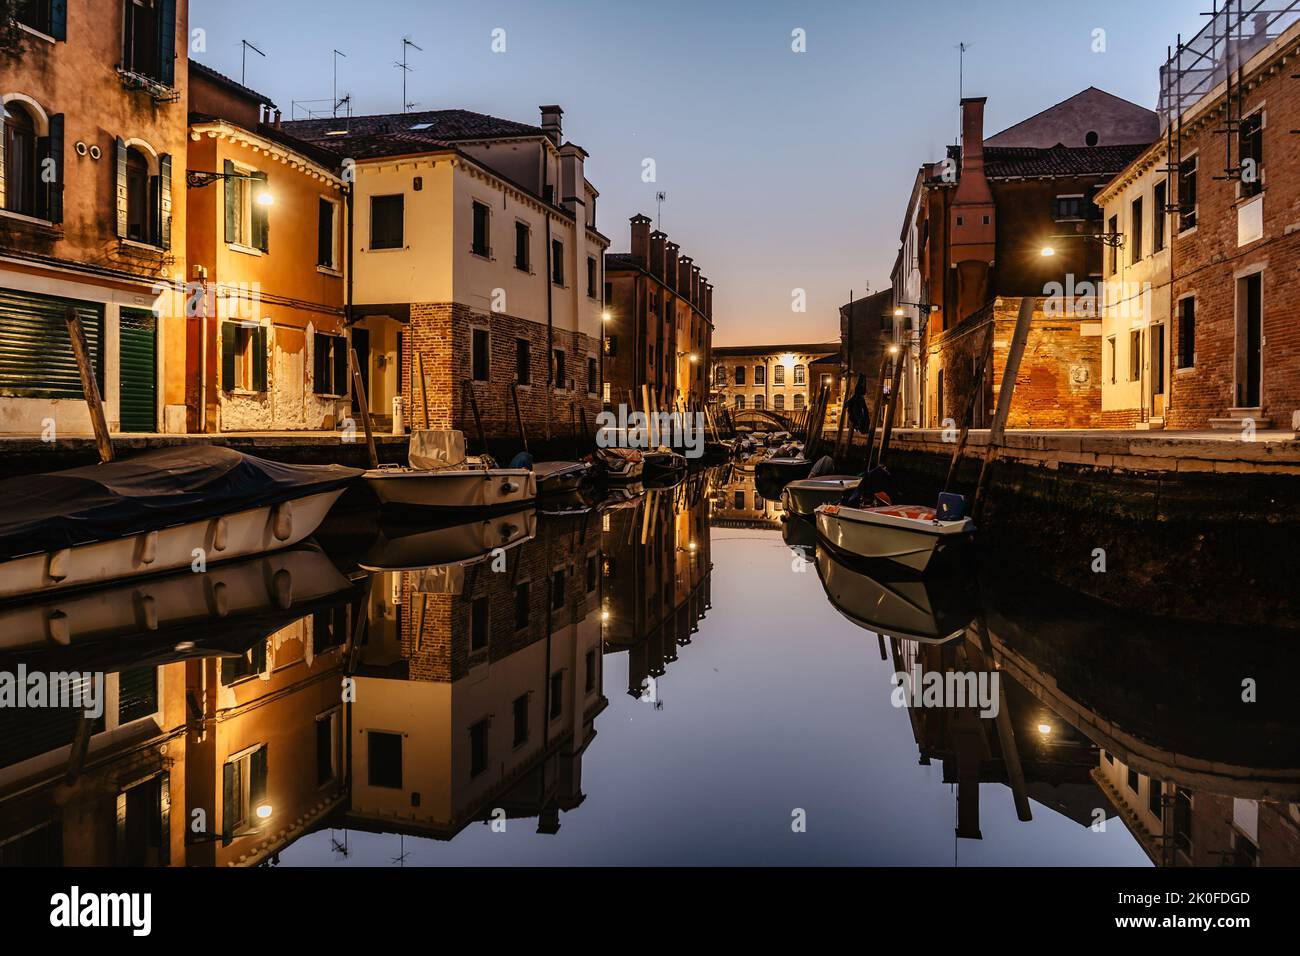 Wasserkanal in der Abenddämmerung, Venedig, Italien. Typischer Bootstransport, venezianische Reise städtische Szene. Wassertransport. Beliebtes Touristenziel. Romantische Ruhe Stockfoto